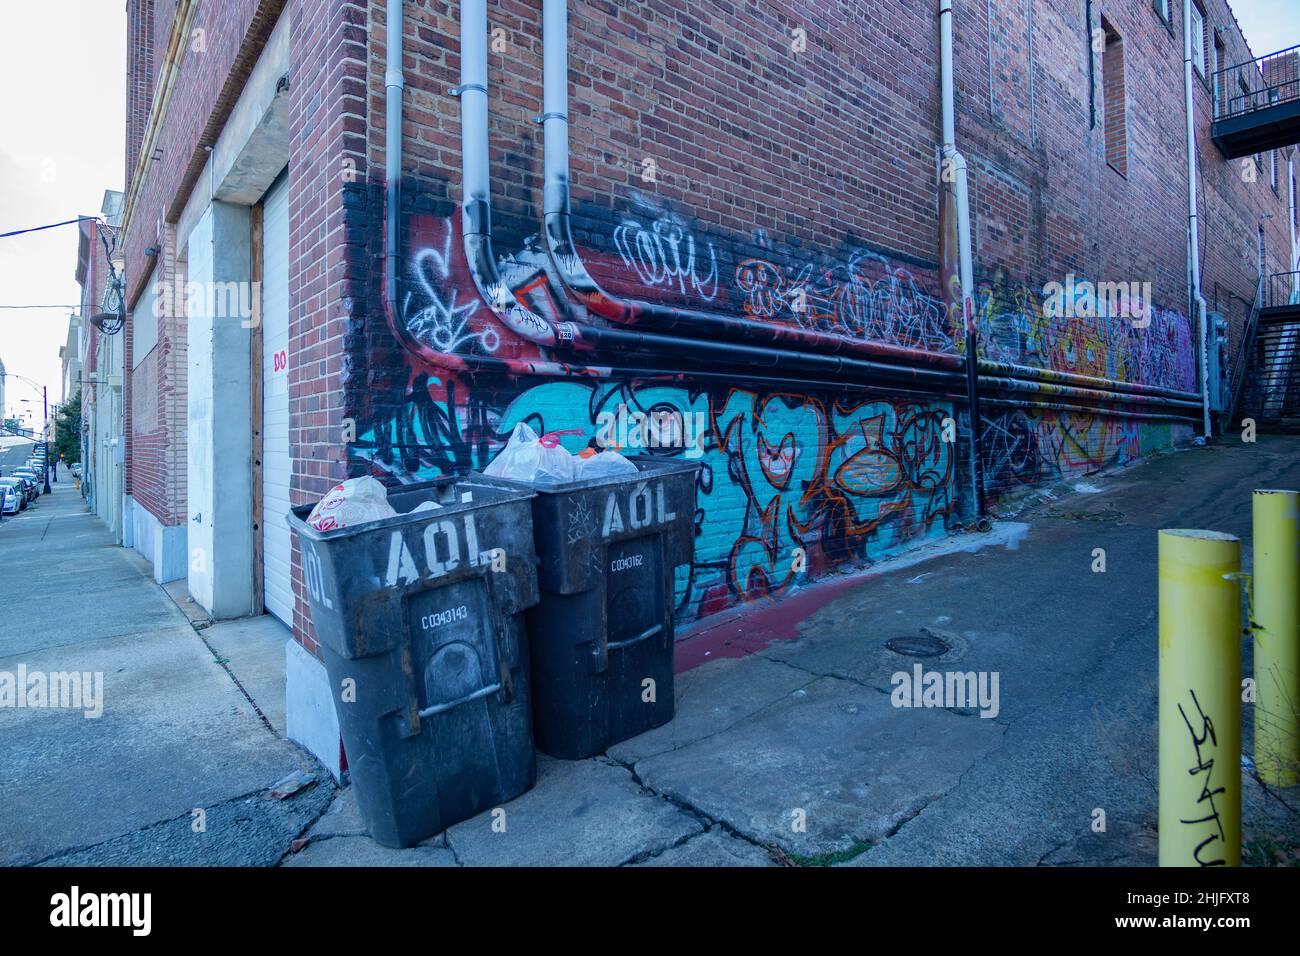 Trash bins sit in an empty alley in Winston-Salem. Stock Photo